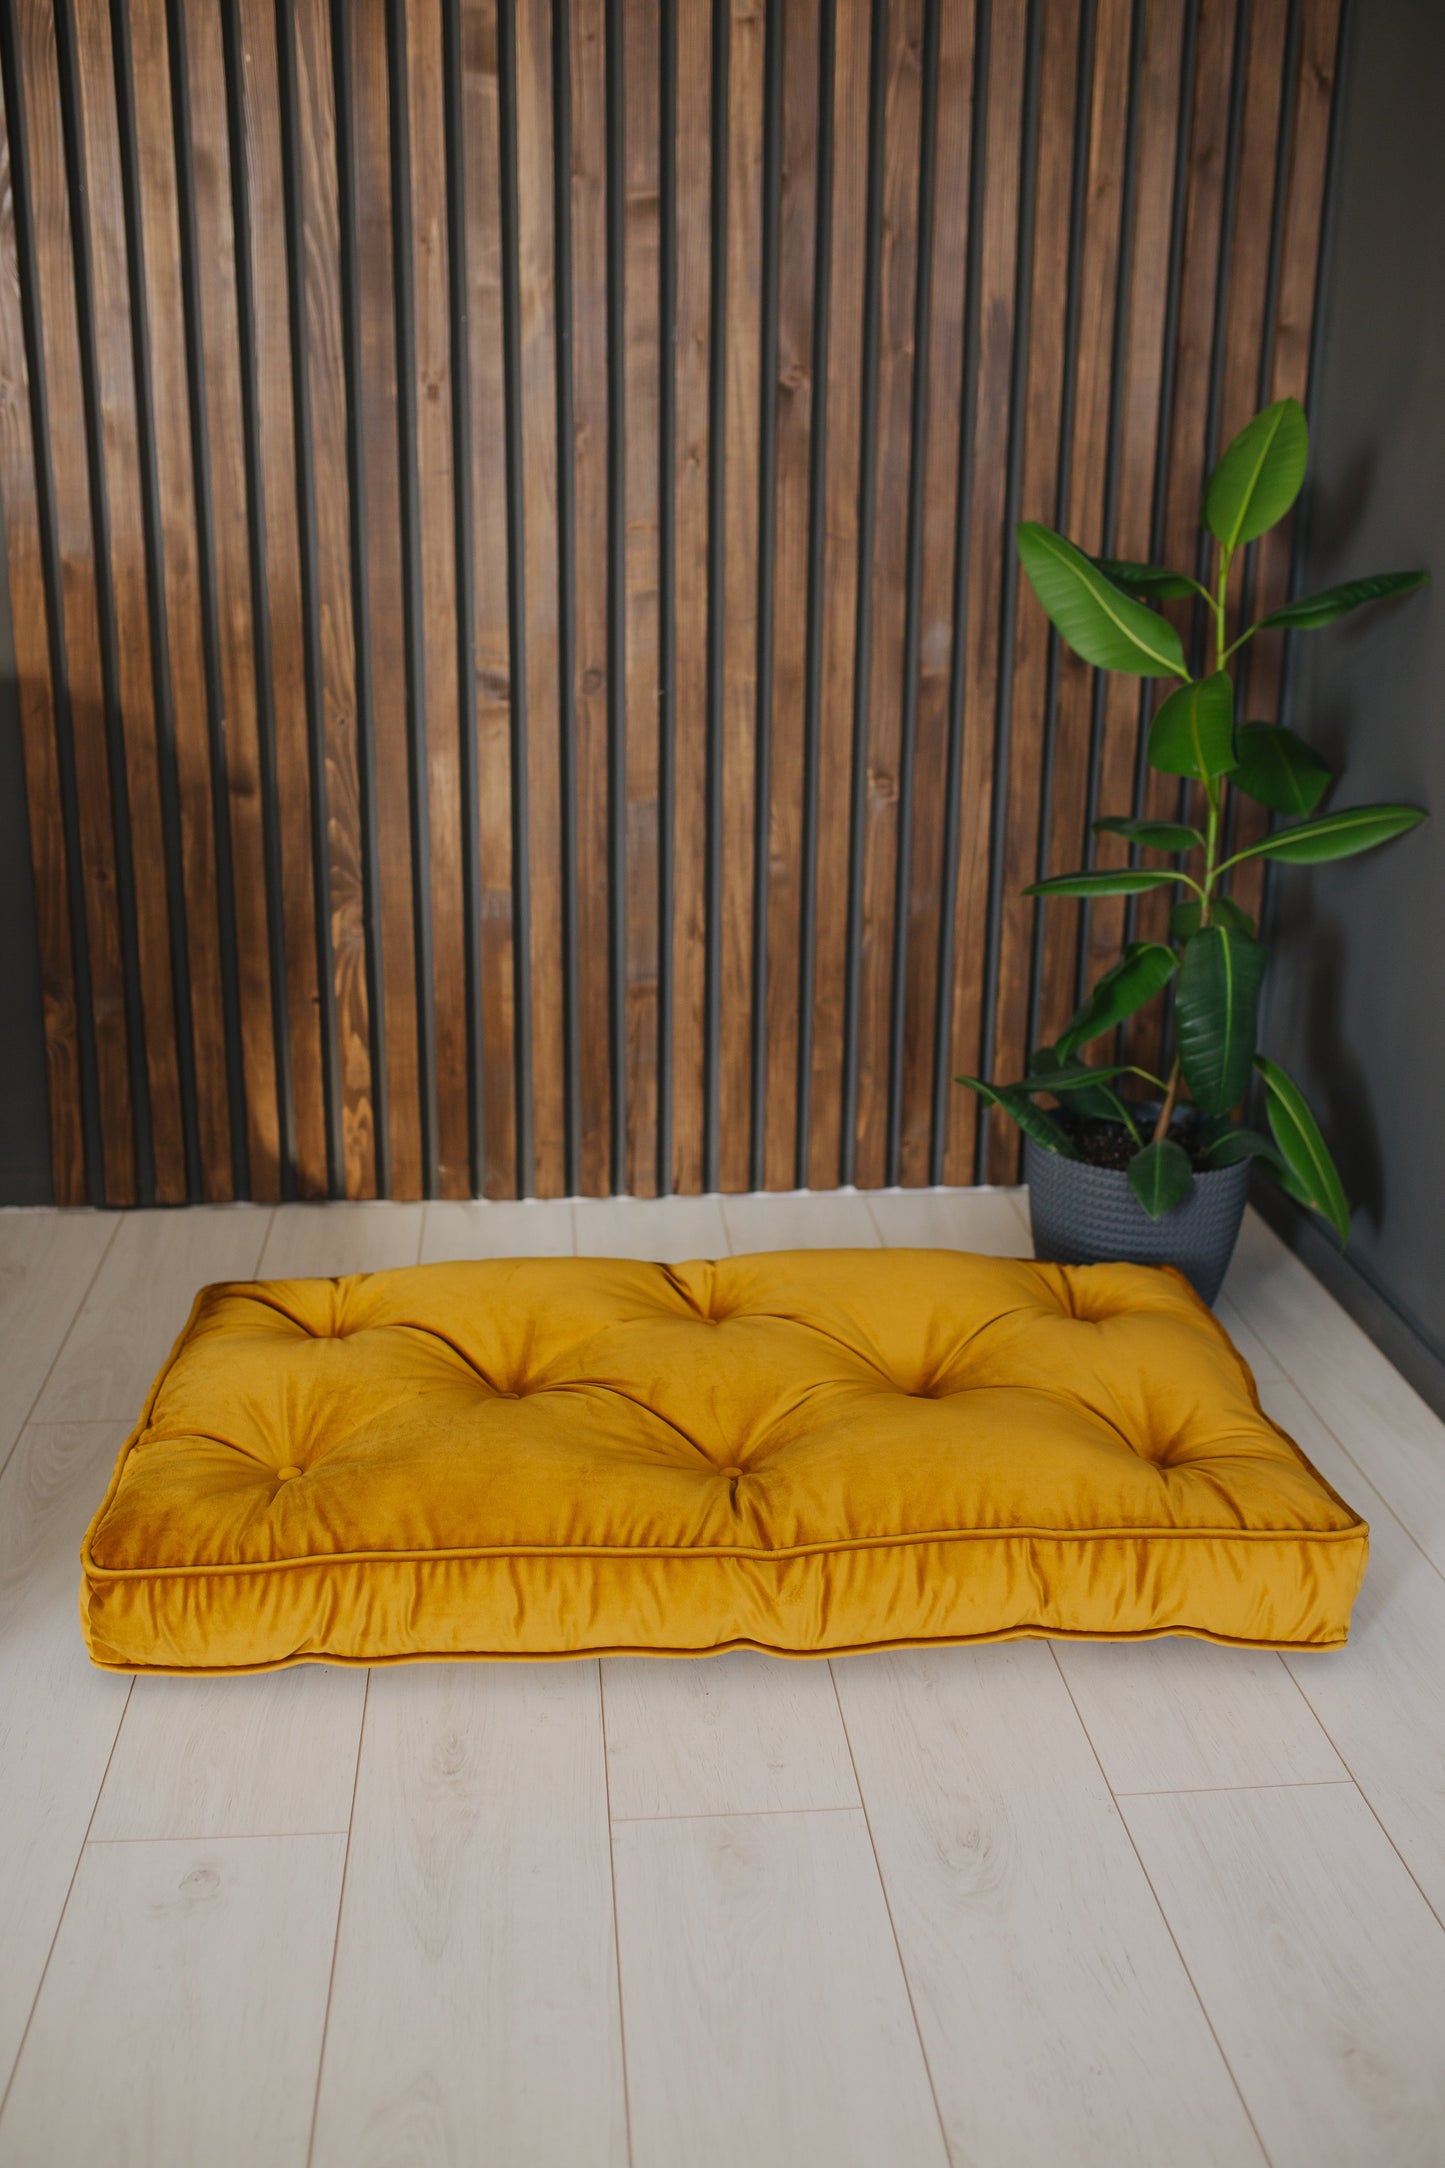 Velvet French cushion